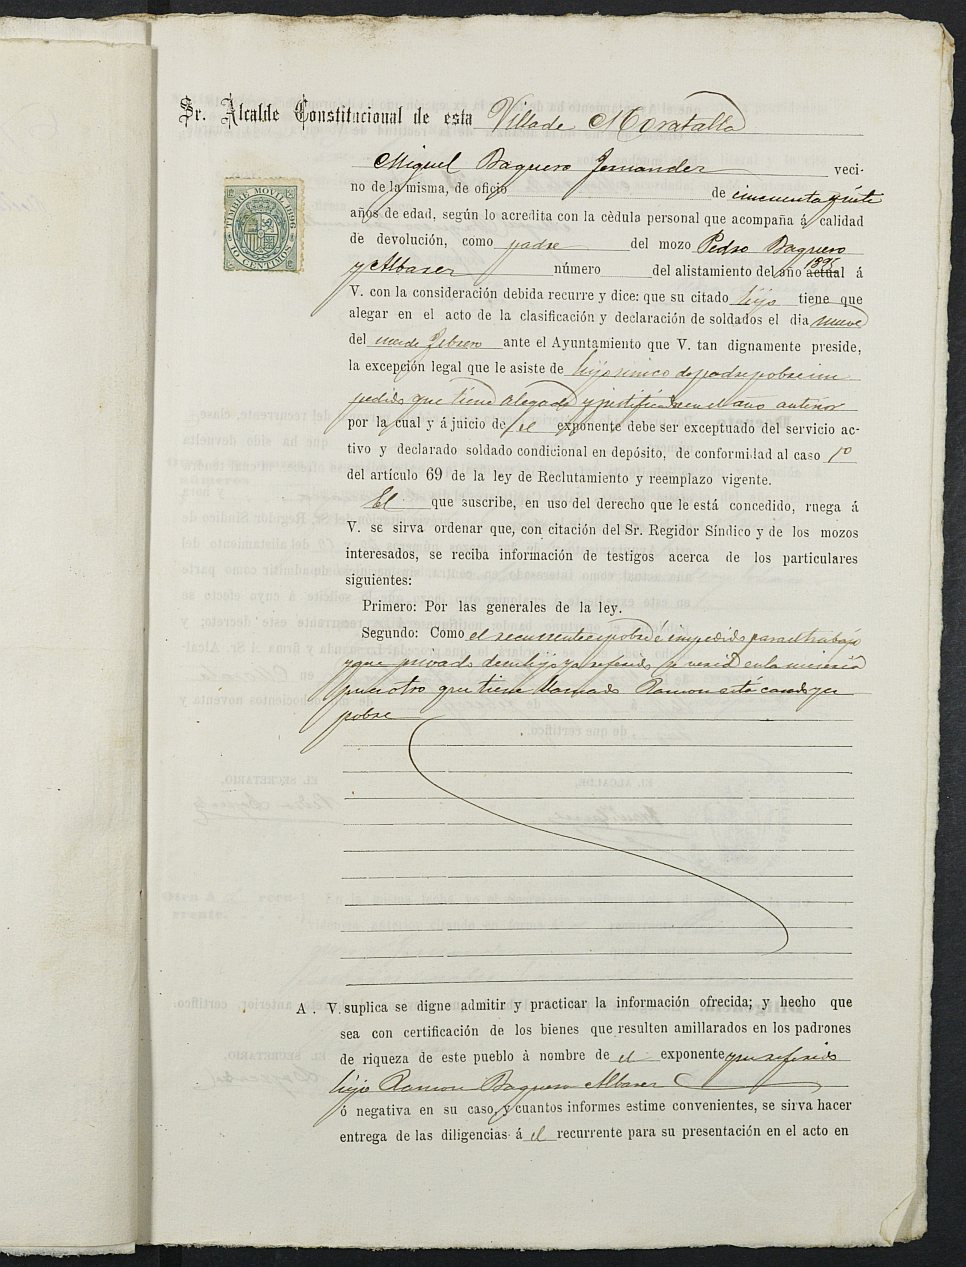 Expediente justificativo de la excepción del servicio militar de Pedro Baquero Álvarez, mozo del reemplazo de 1895 de Moratalla.